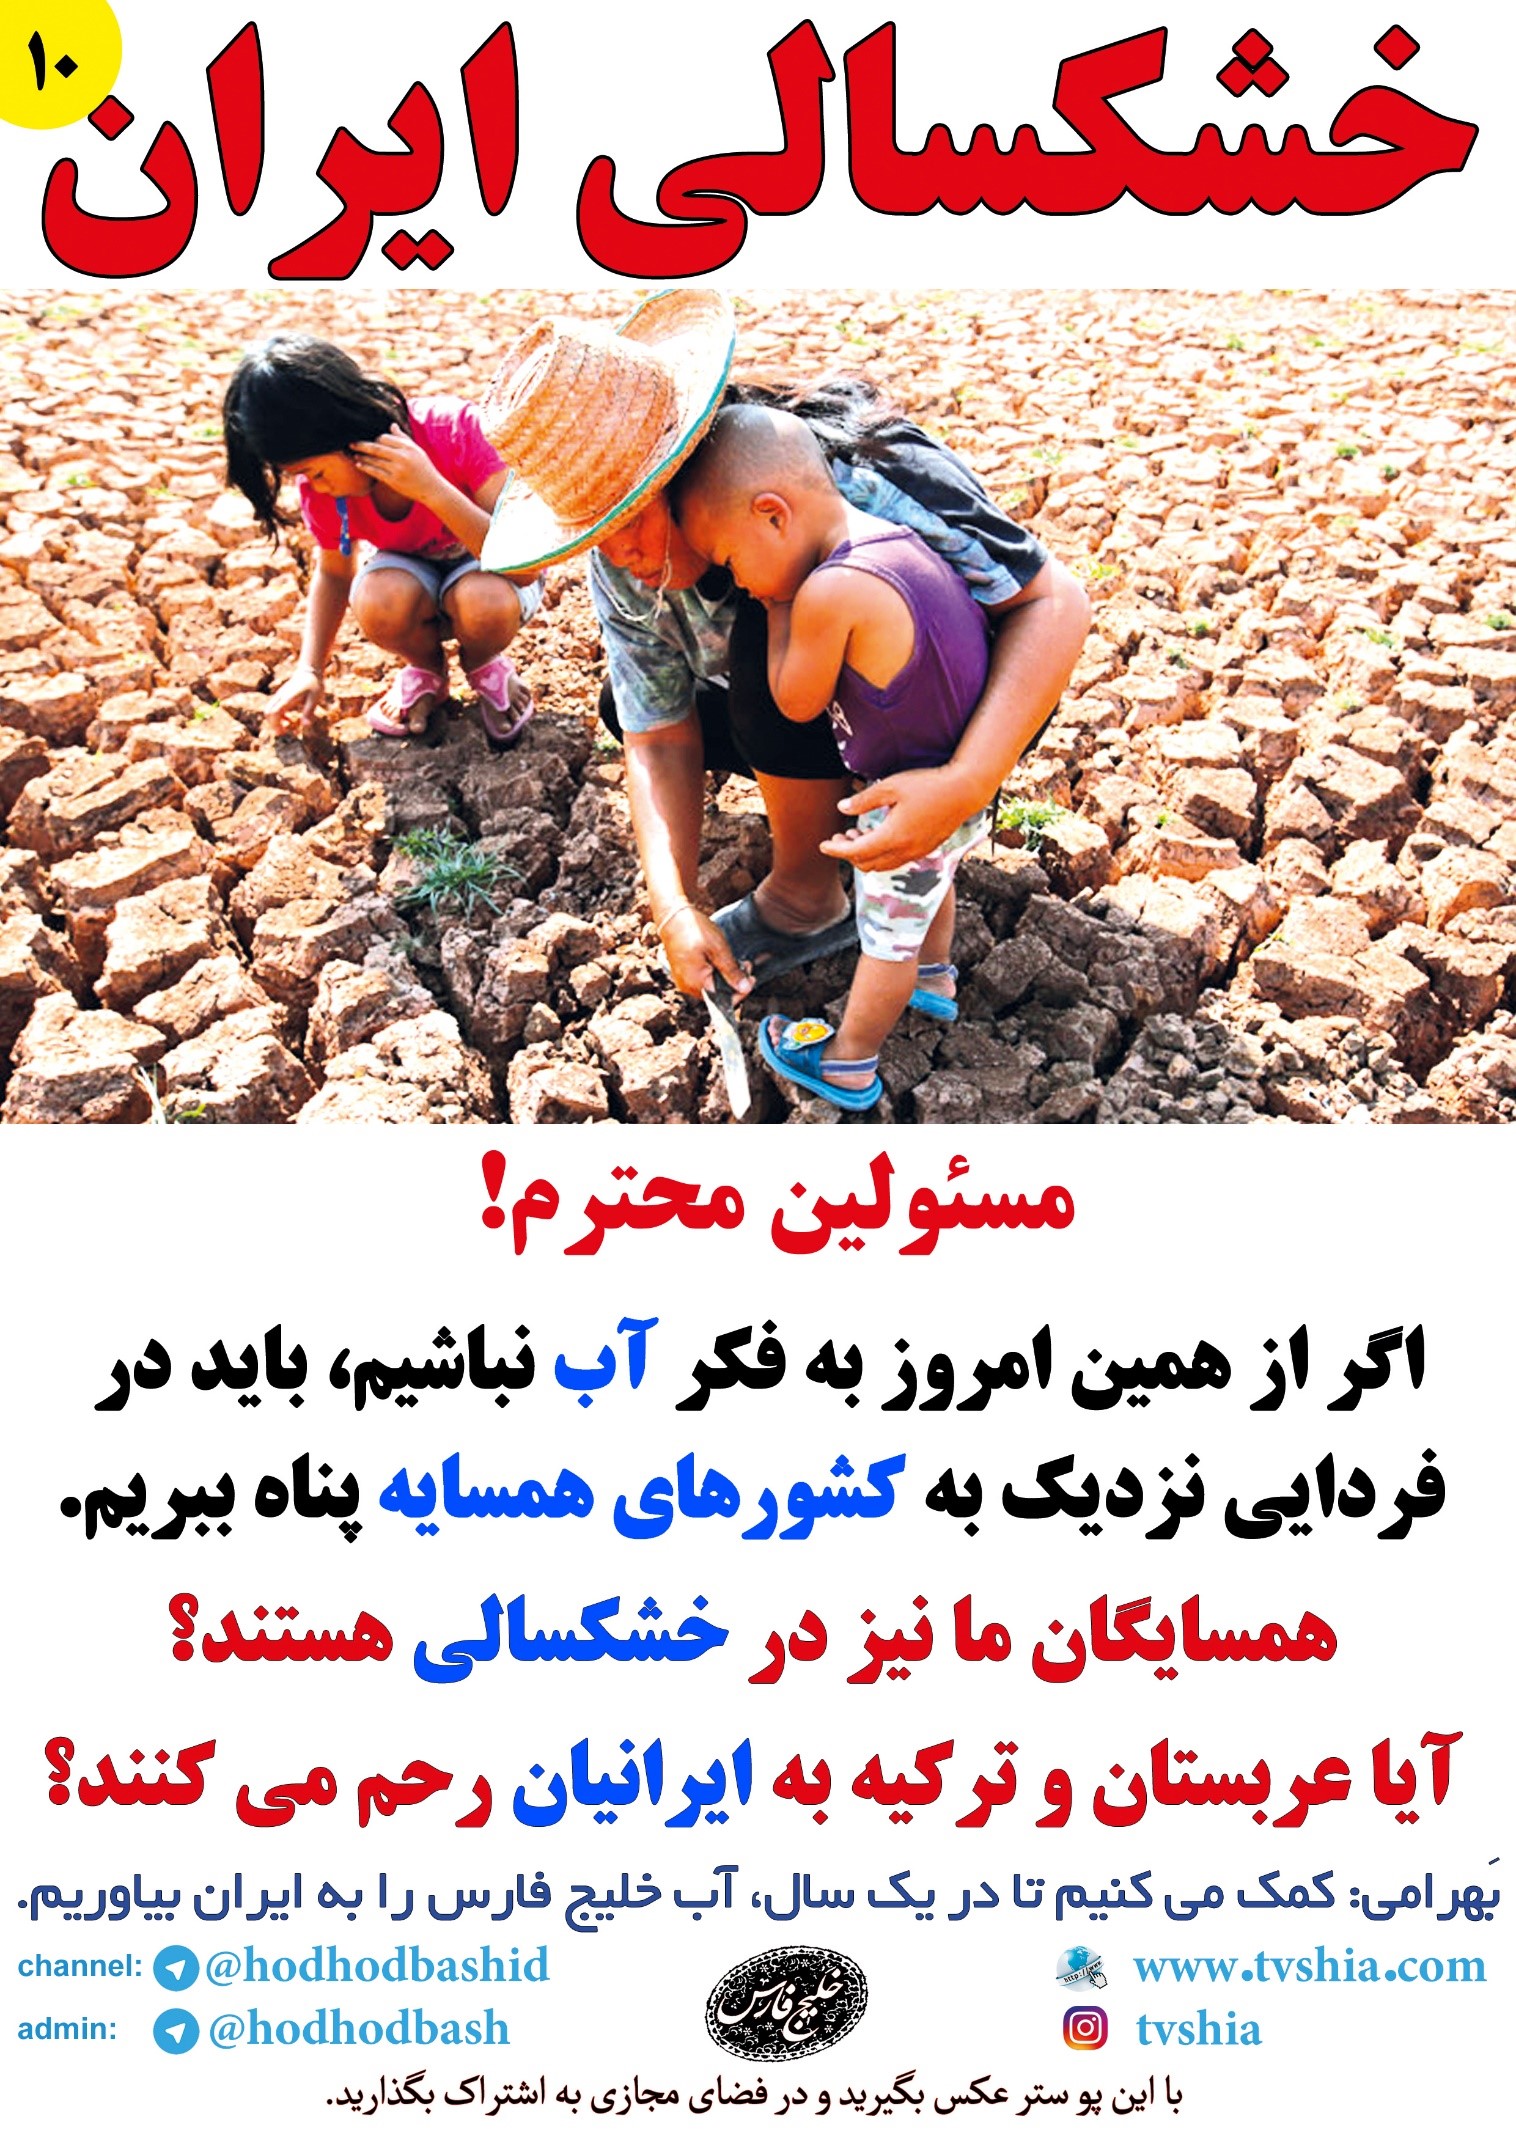 علی بهرامی نیکو- خشکسالی - هزار و یک قطره- راهکار دو ماهه غیر عادی خشکسالی - کتاب هزار و یک قطره 